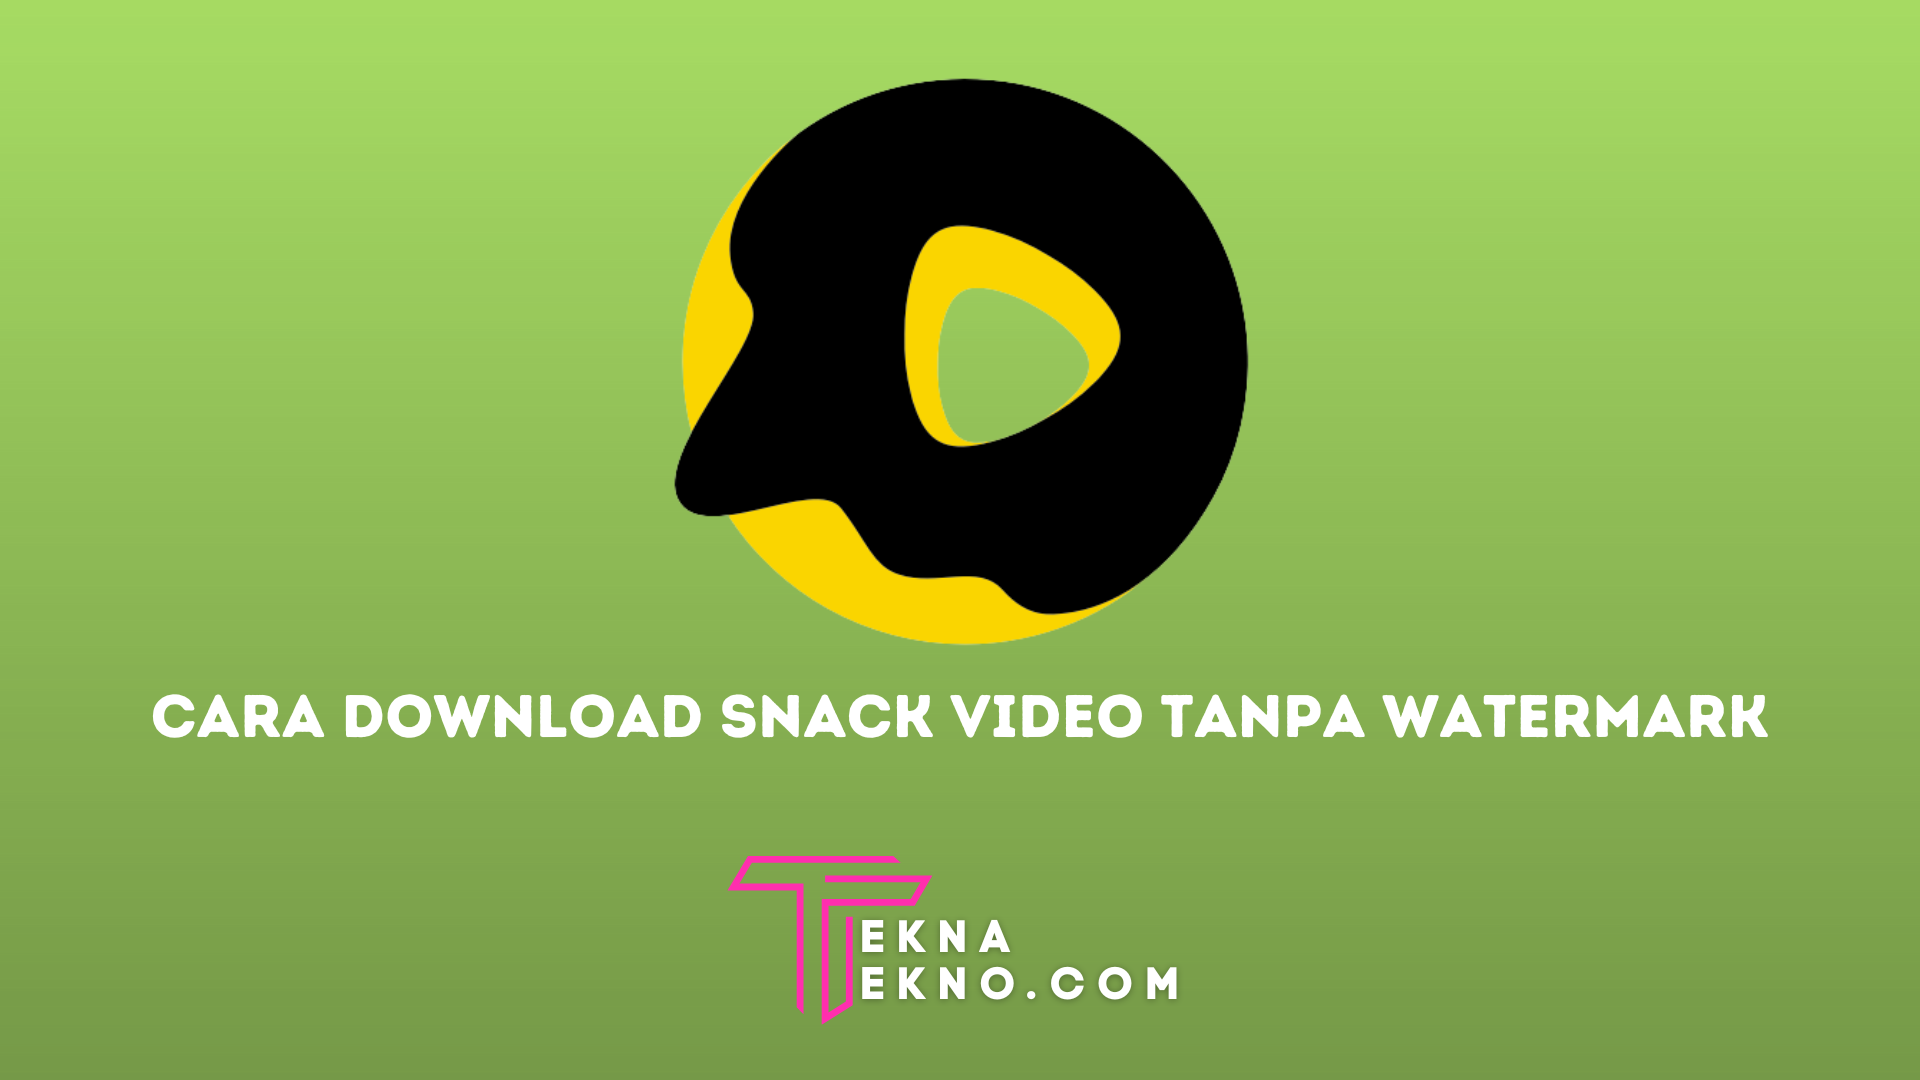 7 Cara Download Snack Video Tanpa Watermark Dengan Mudah Di HP Android